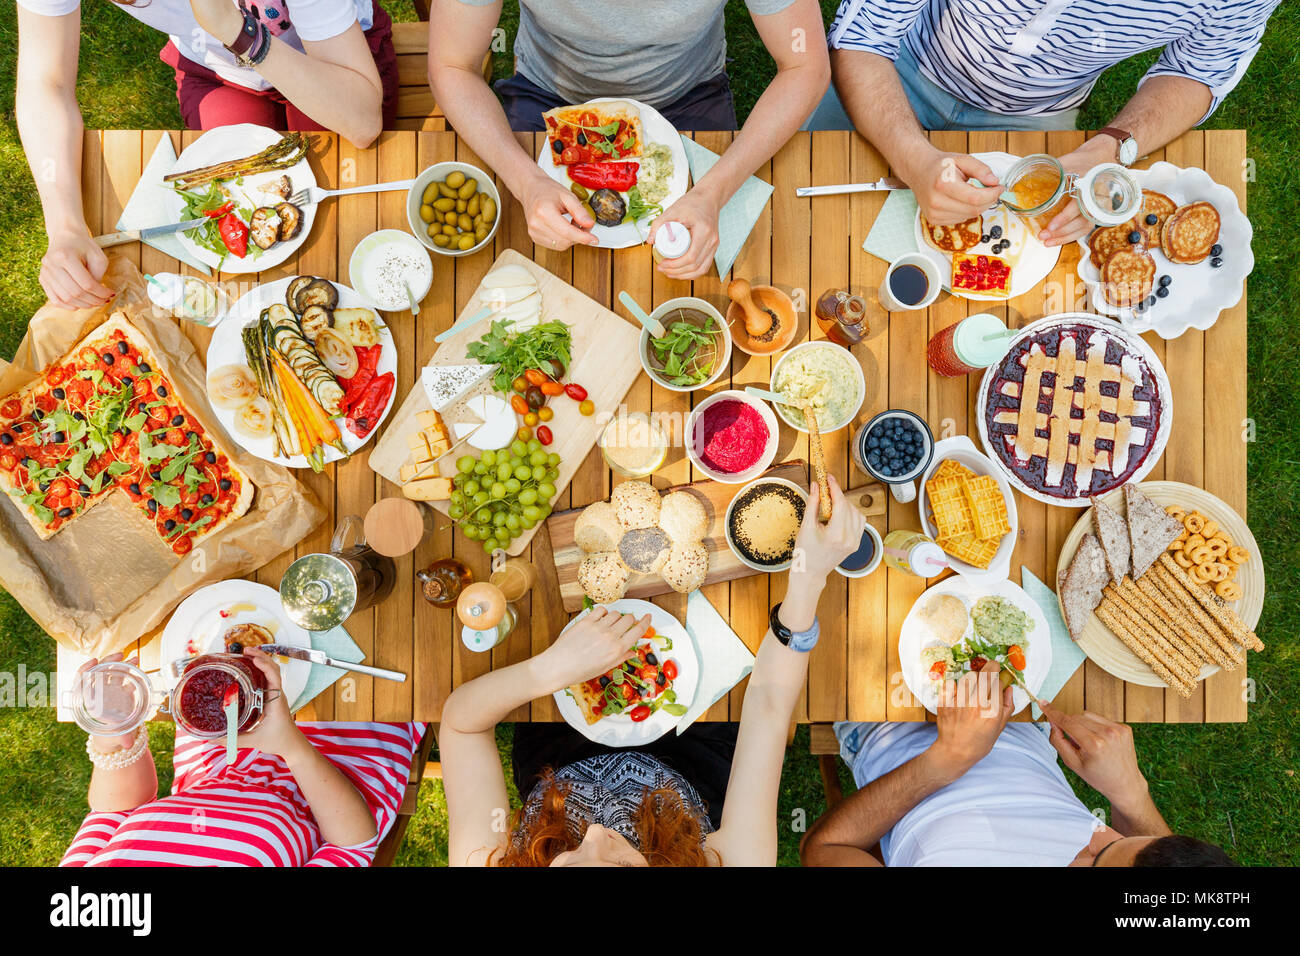 Les amis de manger des aliments sains comme les fruits et pizza vegan à l'extérieur dans le parc sur une table rustique Banque D'Images